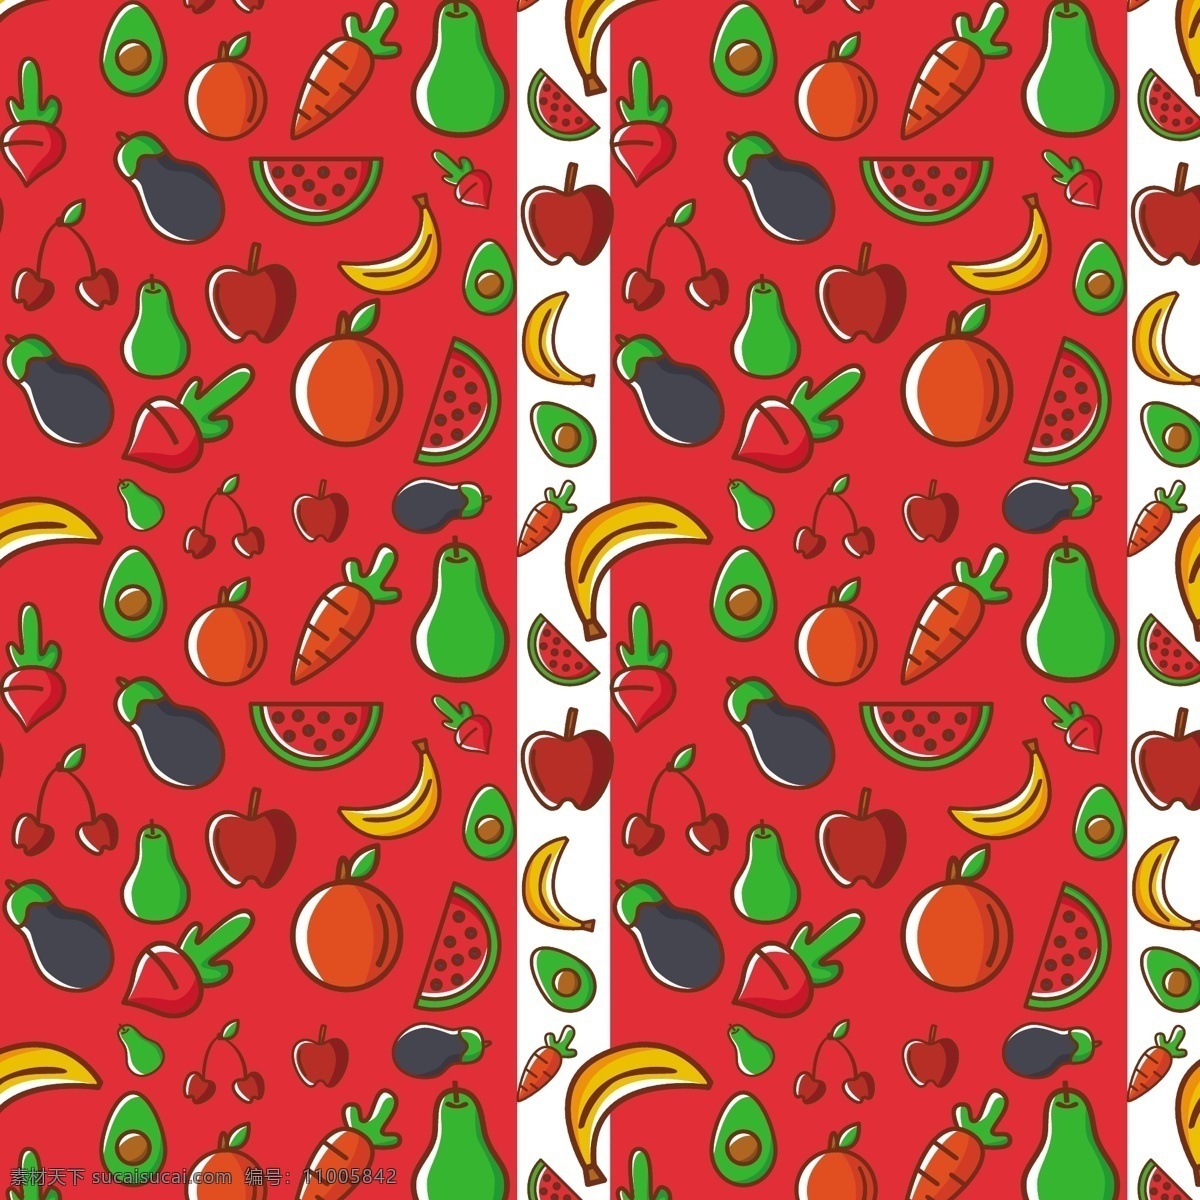 彩色 蔬菜水果 无缝 背景 矢量 萝卜 胡萝卜 橘子 牛油果 西瓜 梨 香蕉 苹果 茄子 樱桃 蔬菜 水果 食物 无缝背景